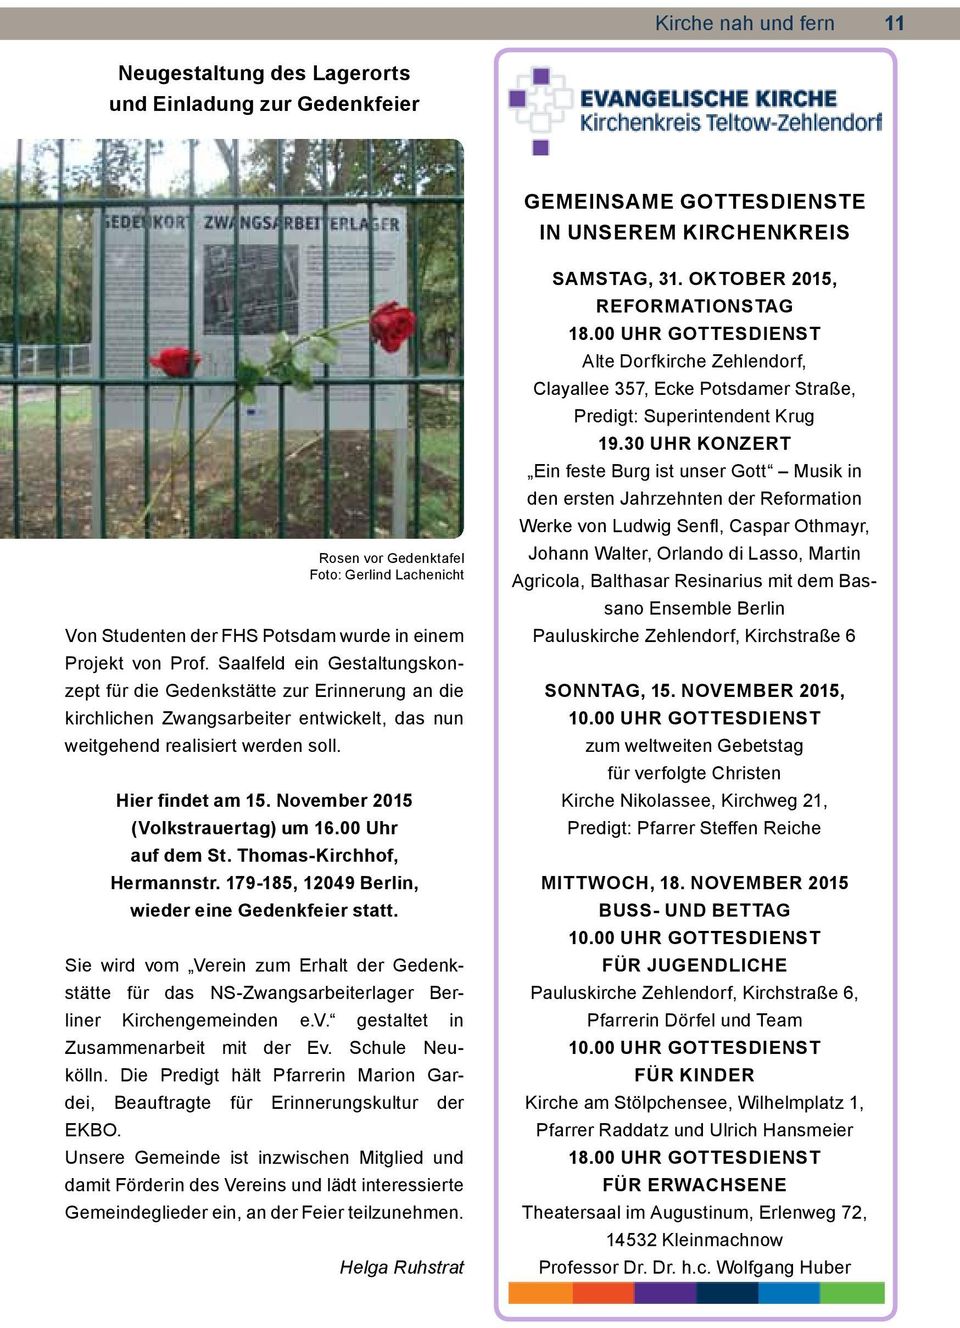 Hier findet am 15. November 2015 (Volkstrauertag) um 16.00 auf dem St. Thomas-Kirchhof, Hermannstr. 179-185, 12049 Berlin, wieder eine Gedenkfeier statt.